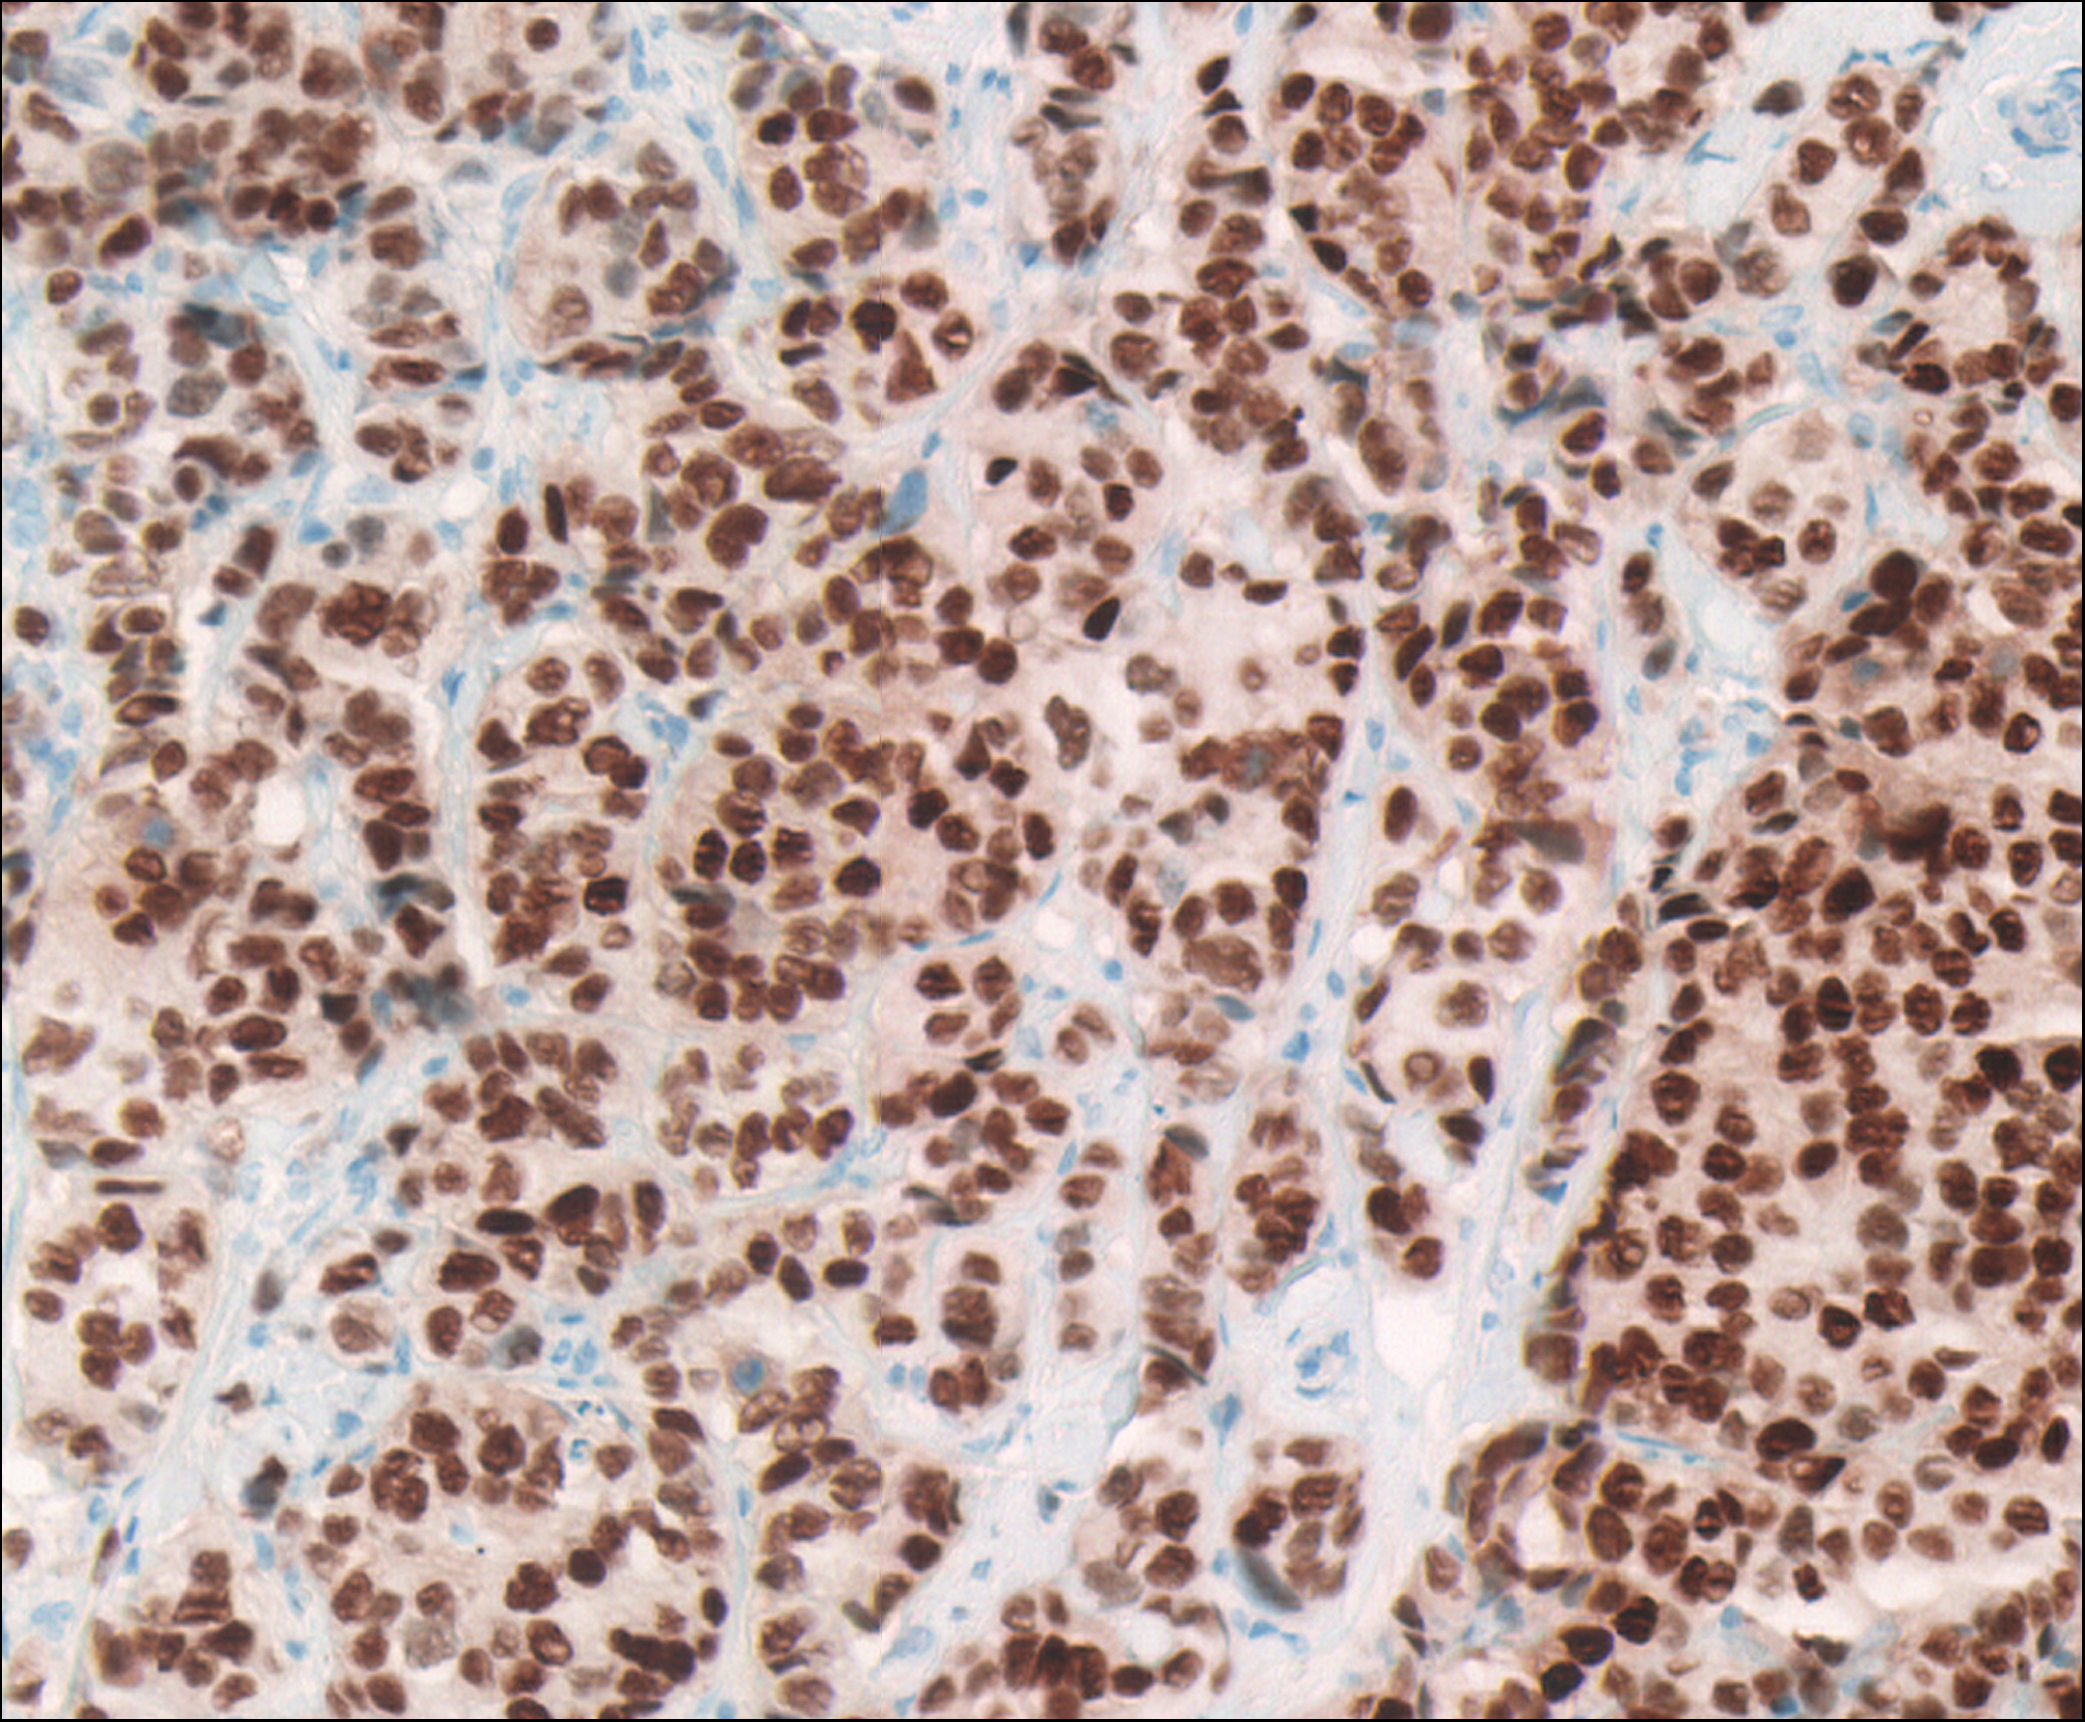 Estrogen receptor-positive breast cancer pathology specimen viewed as DMetrix virtual slide.